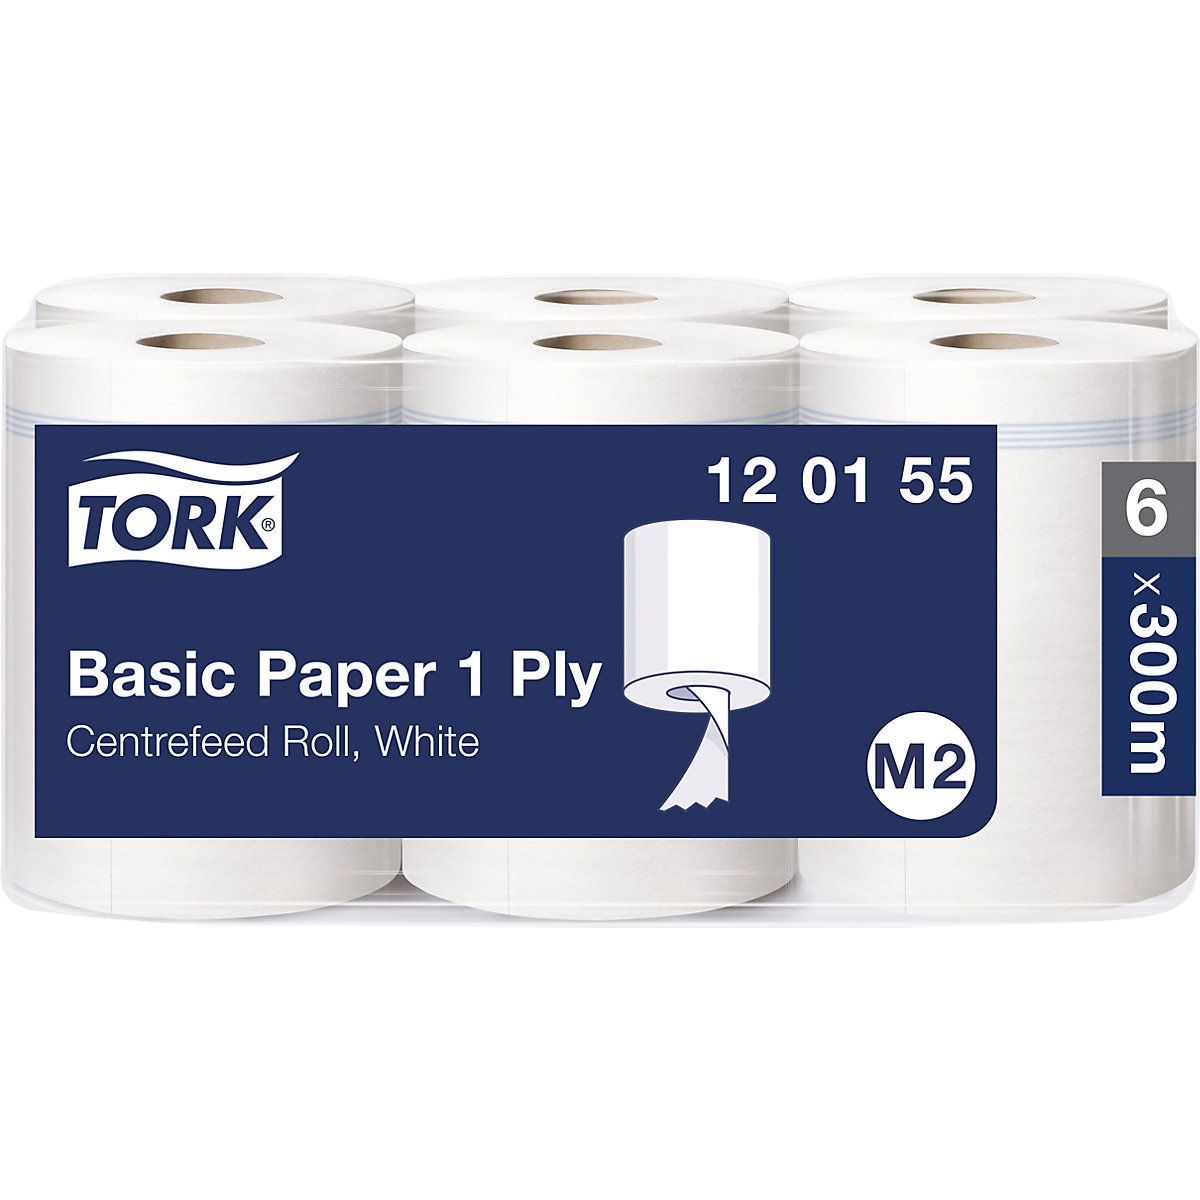 Standardni papirnati ručnici s unutrašnjim odmatanjem - TORK